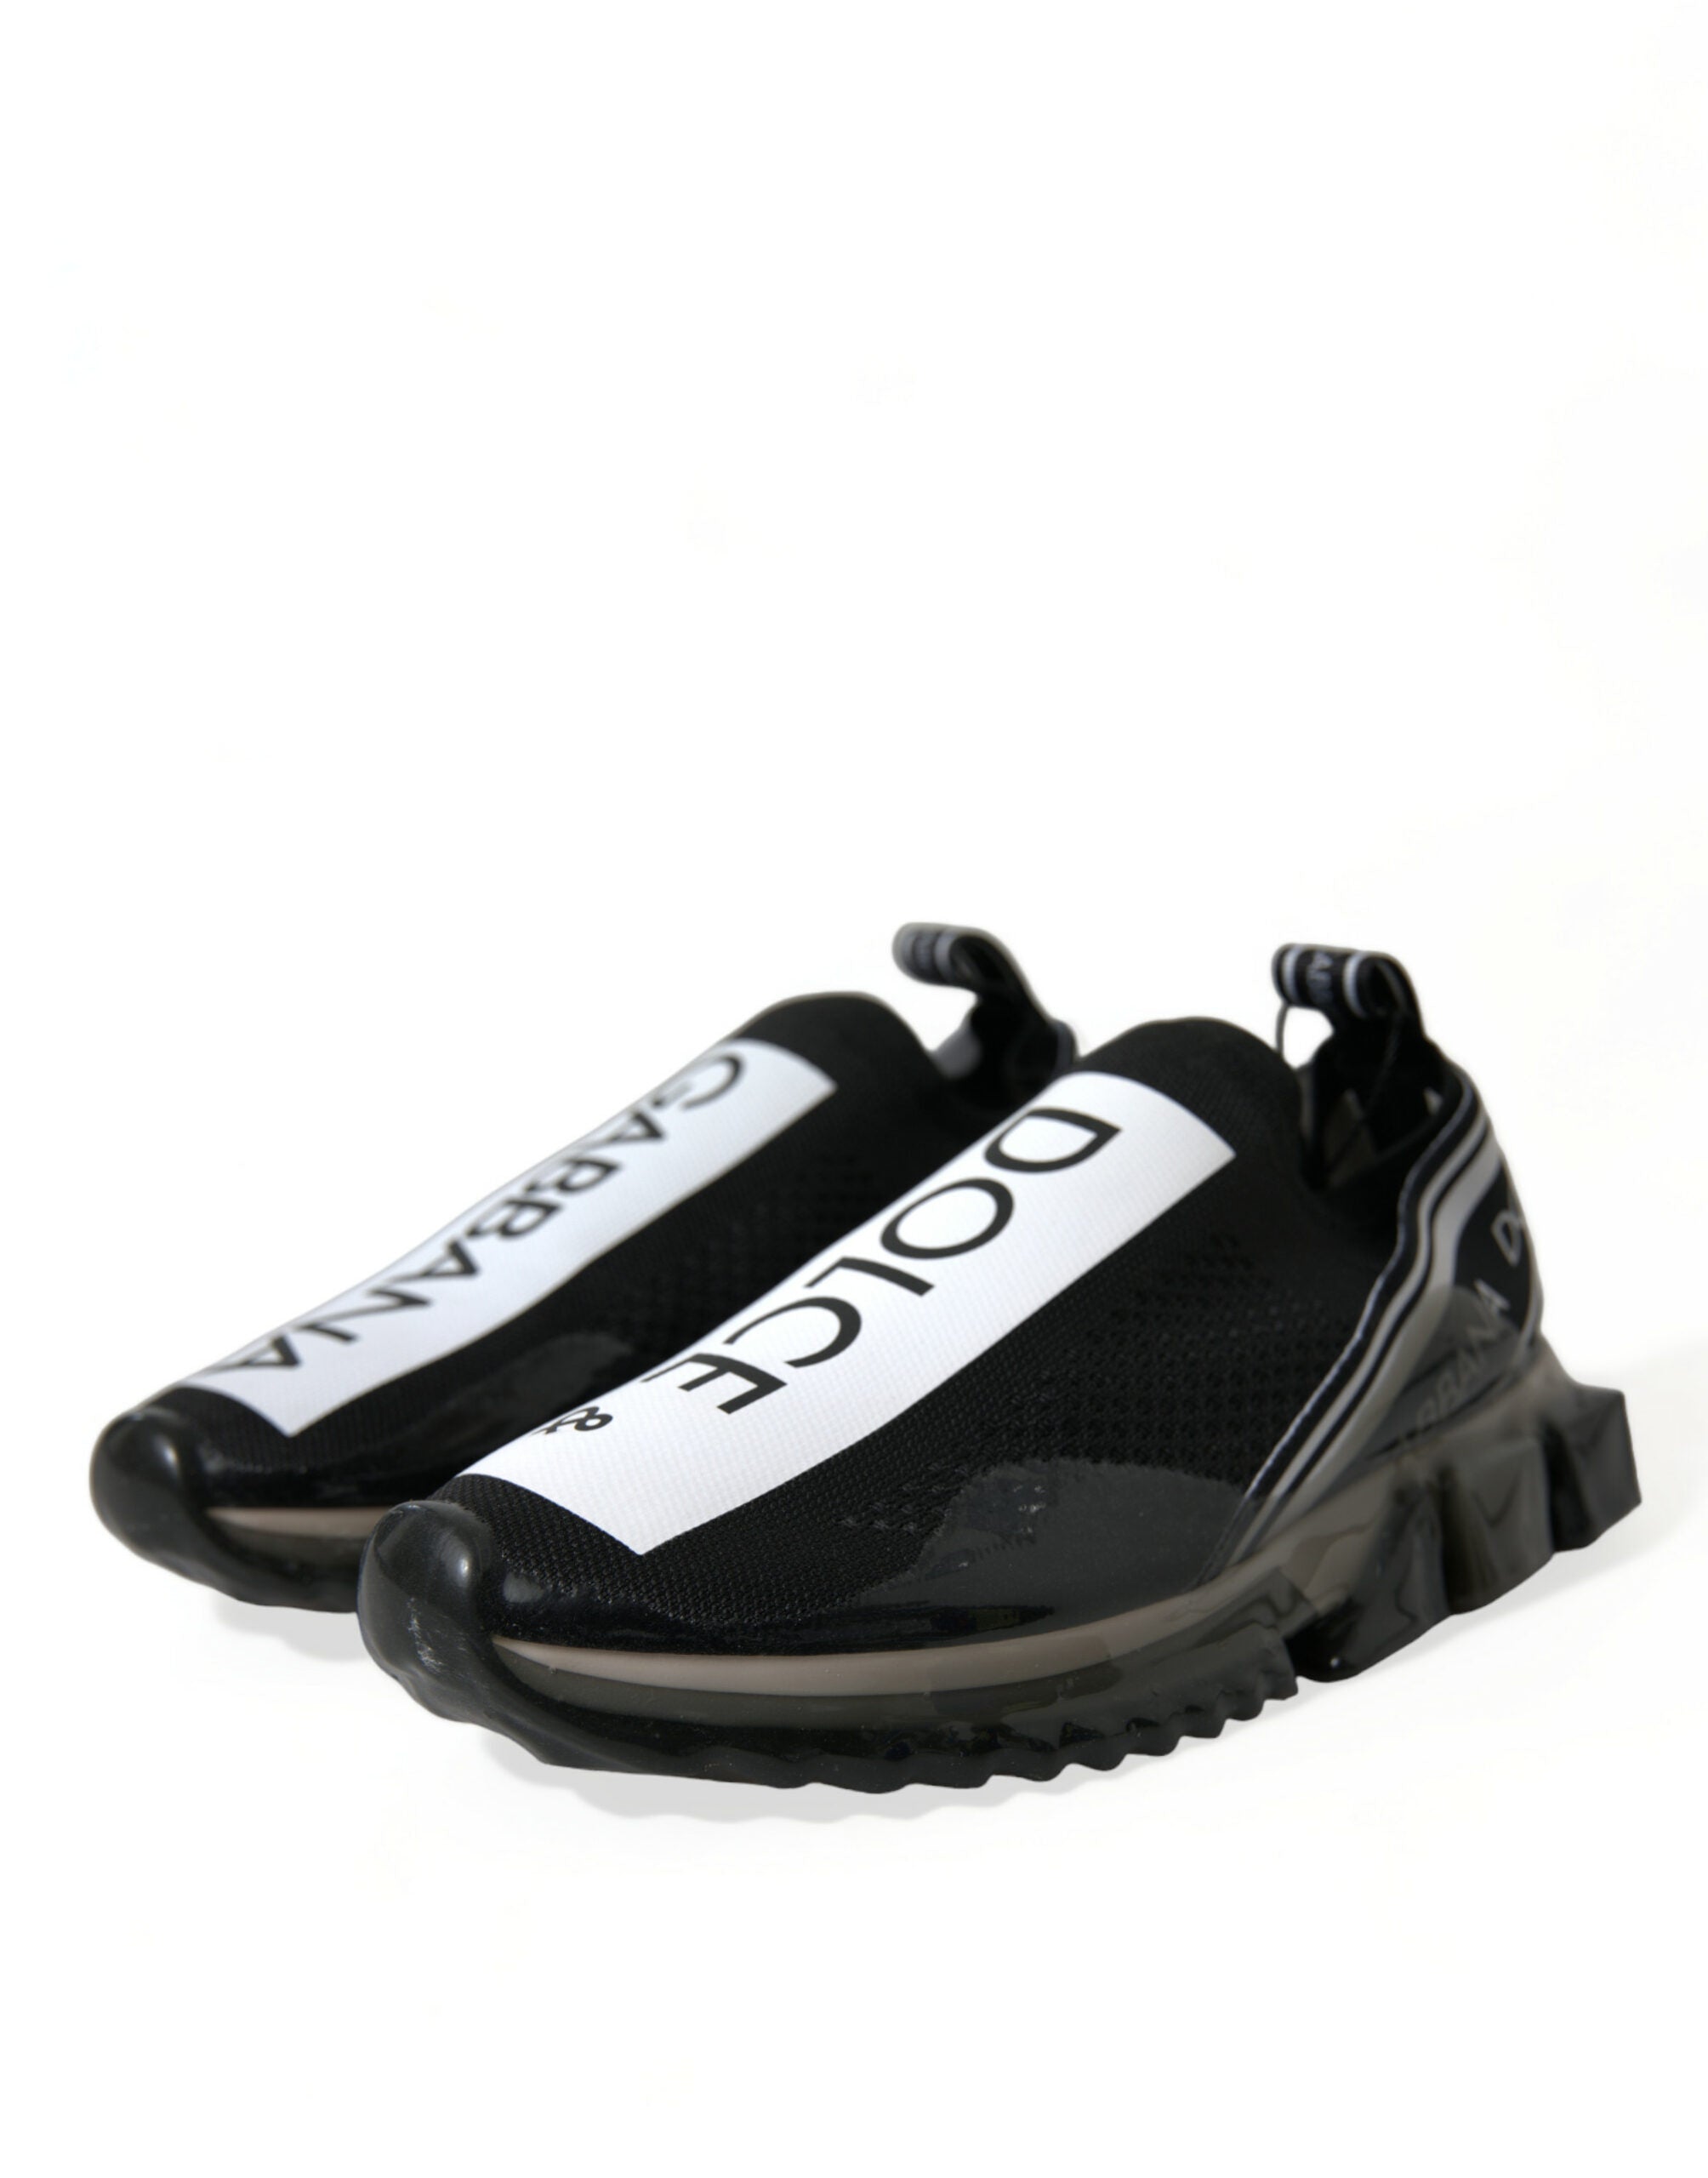 Dolce & Gabbana Elegant Black & White Sorrento Sneakers